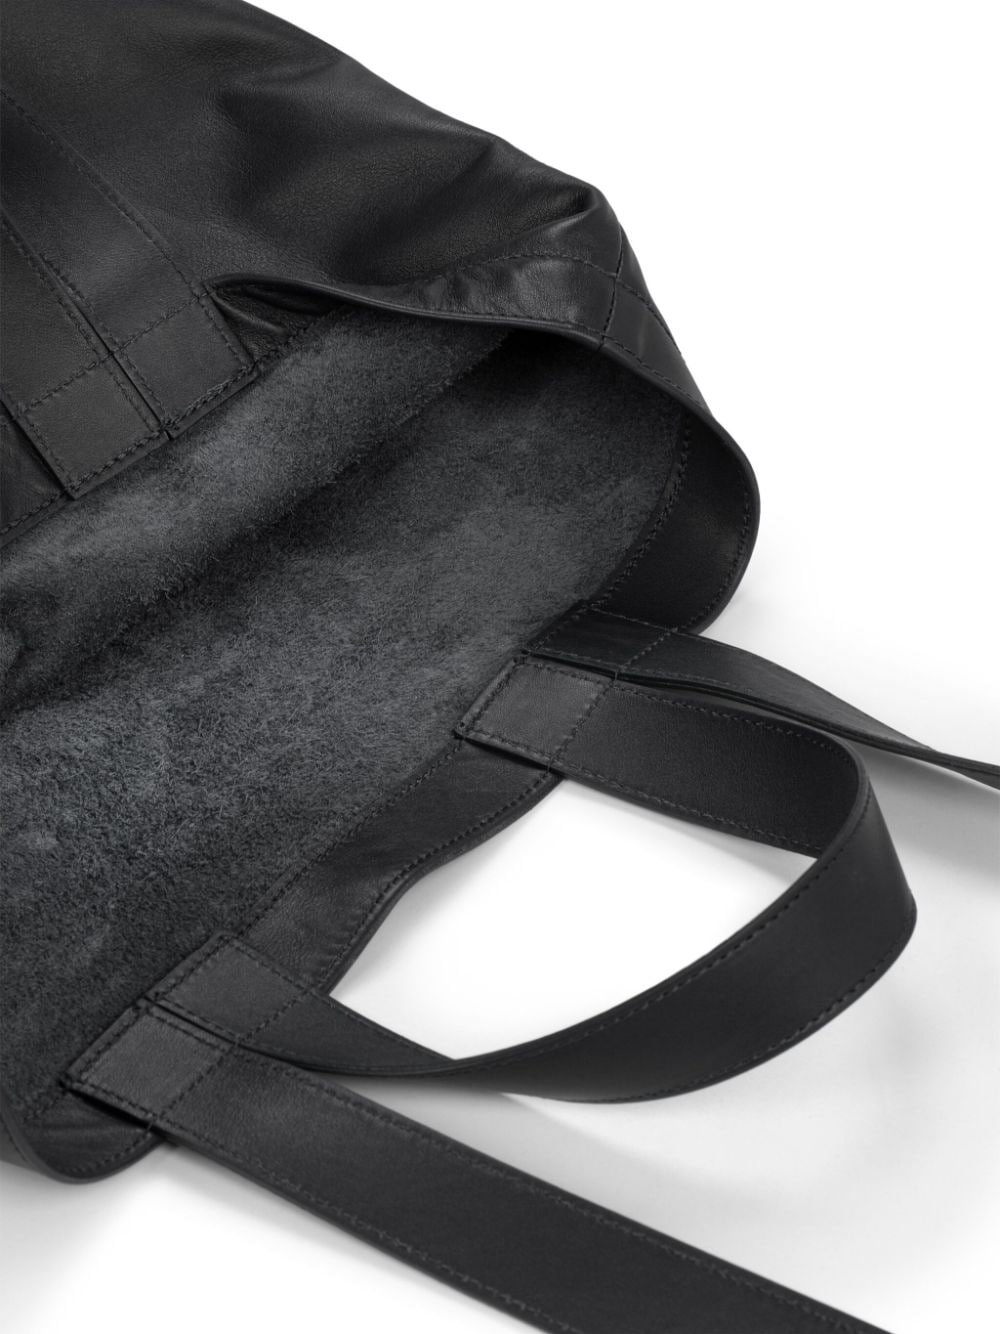 Shop Marsèll Sporta Leather Tote Bag In Black